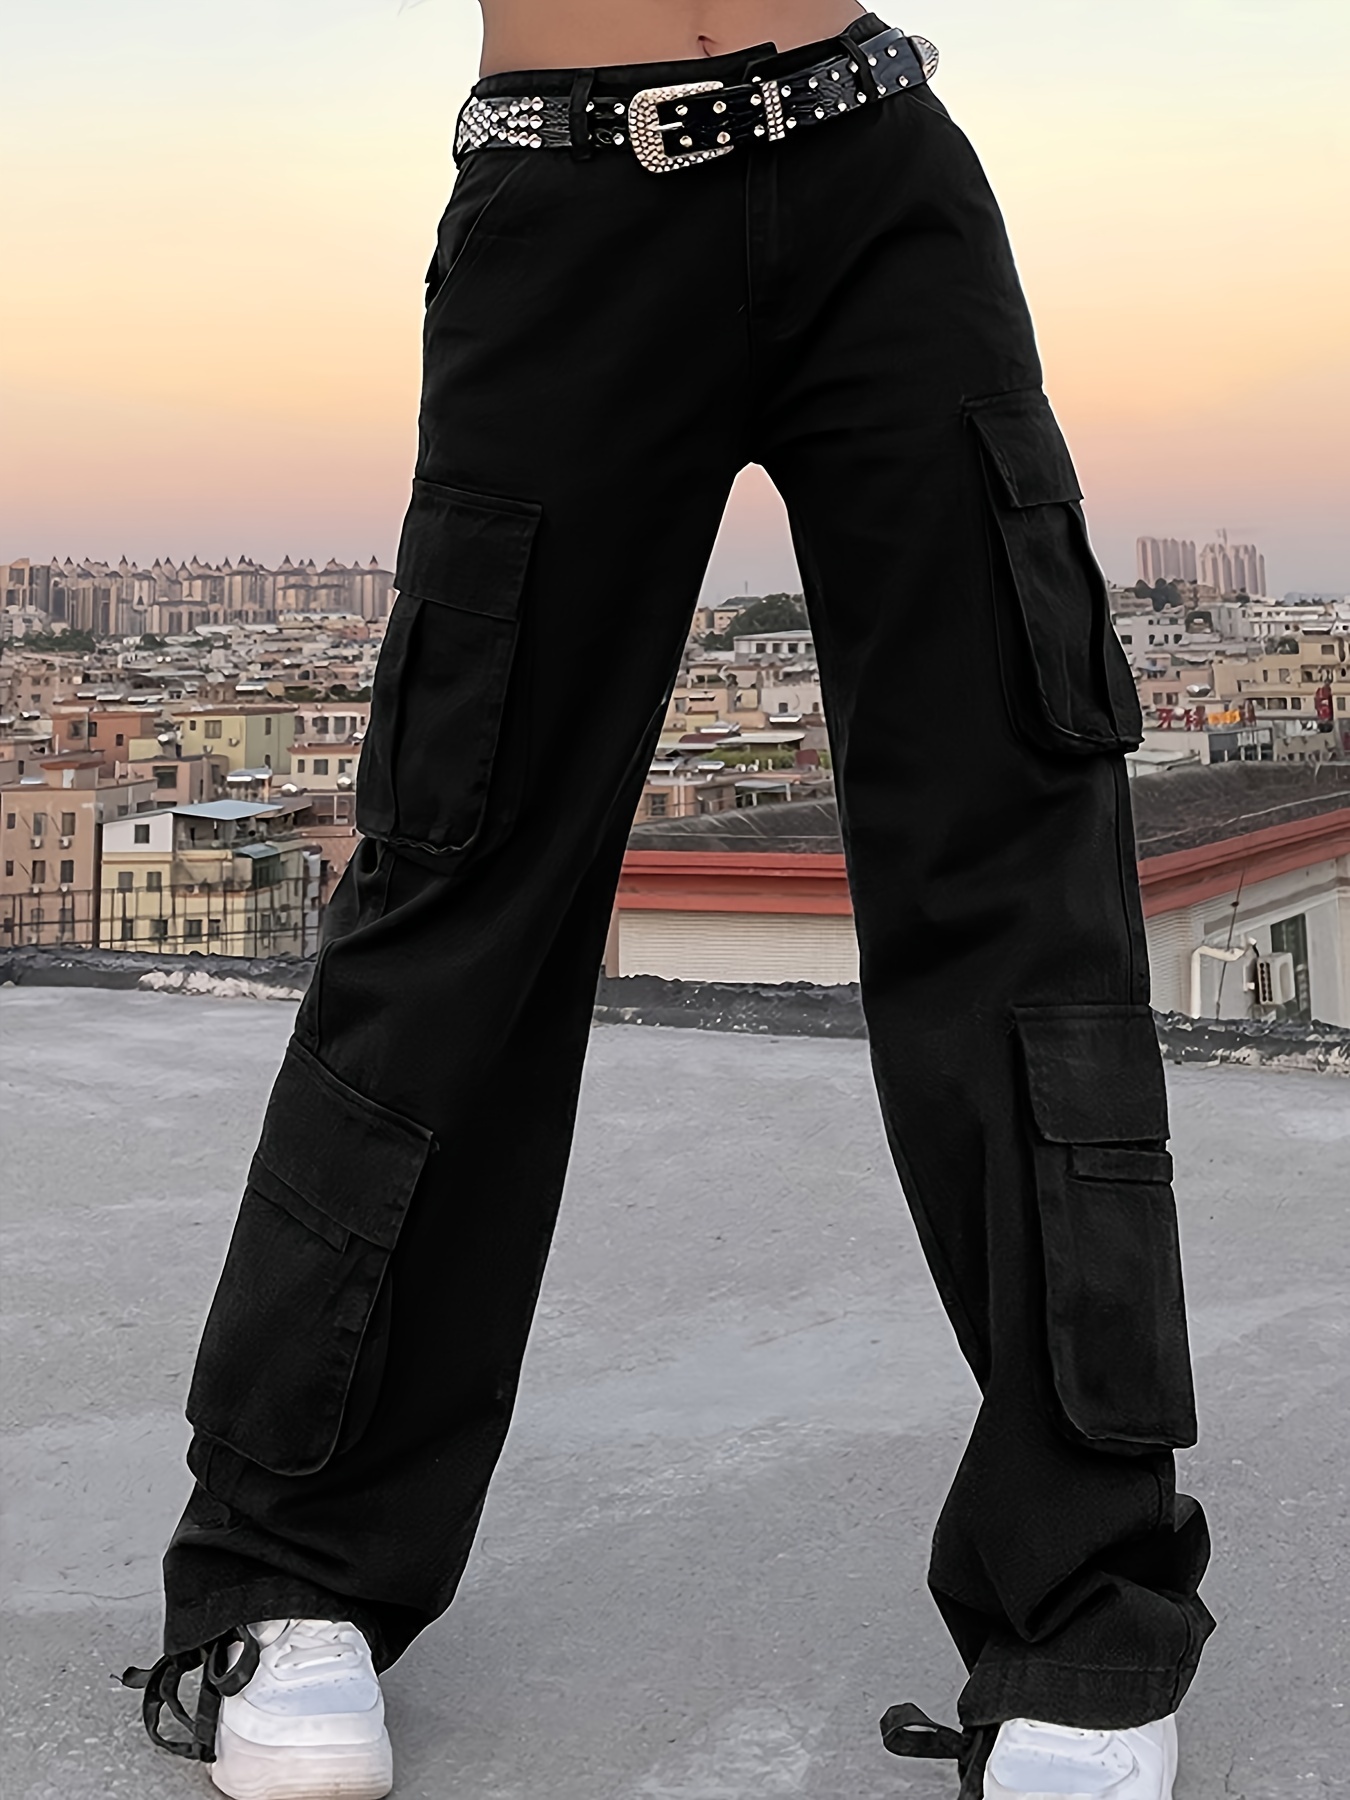 Baggy Jeans,Lattest Design Black Denim 6 Pocket Cargo pant with